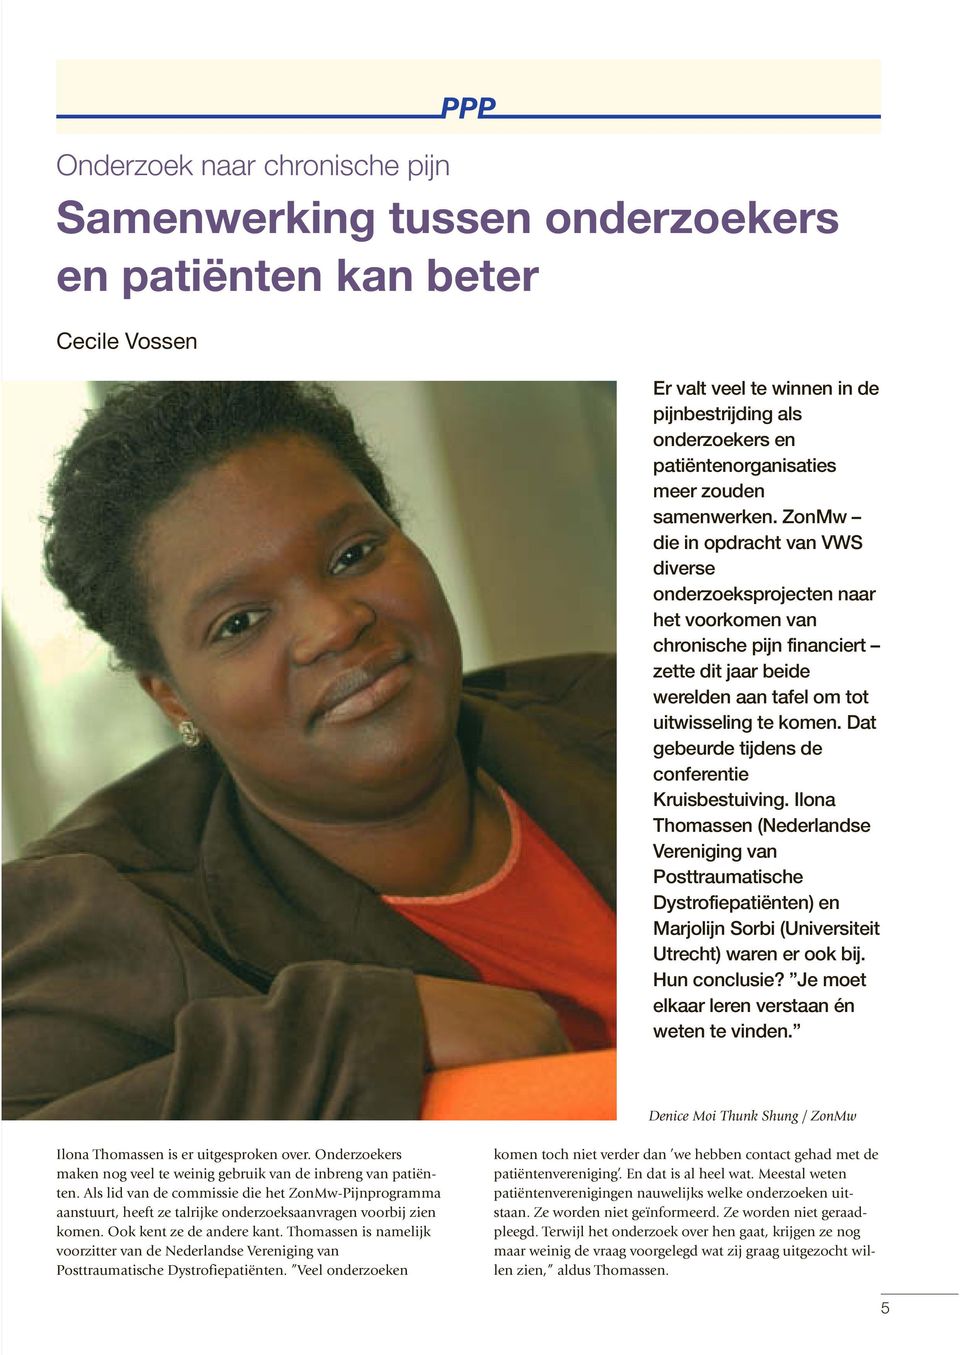 Dat gebeurde tijdens de conferentie Kruisbestuiving. Ilona Thomassen (Nederlandse Vereniging van Posttraumatische Dystrofiepatiënten) en Marjolijn Sorbi (Universiteit Utrecht) waren er ook bij.